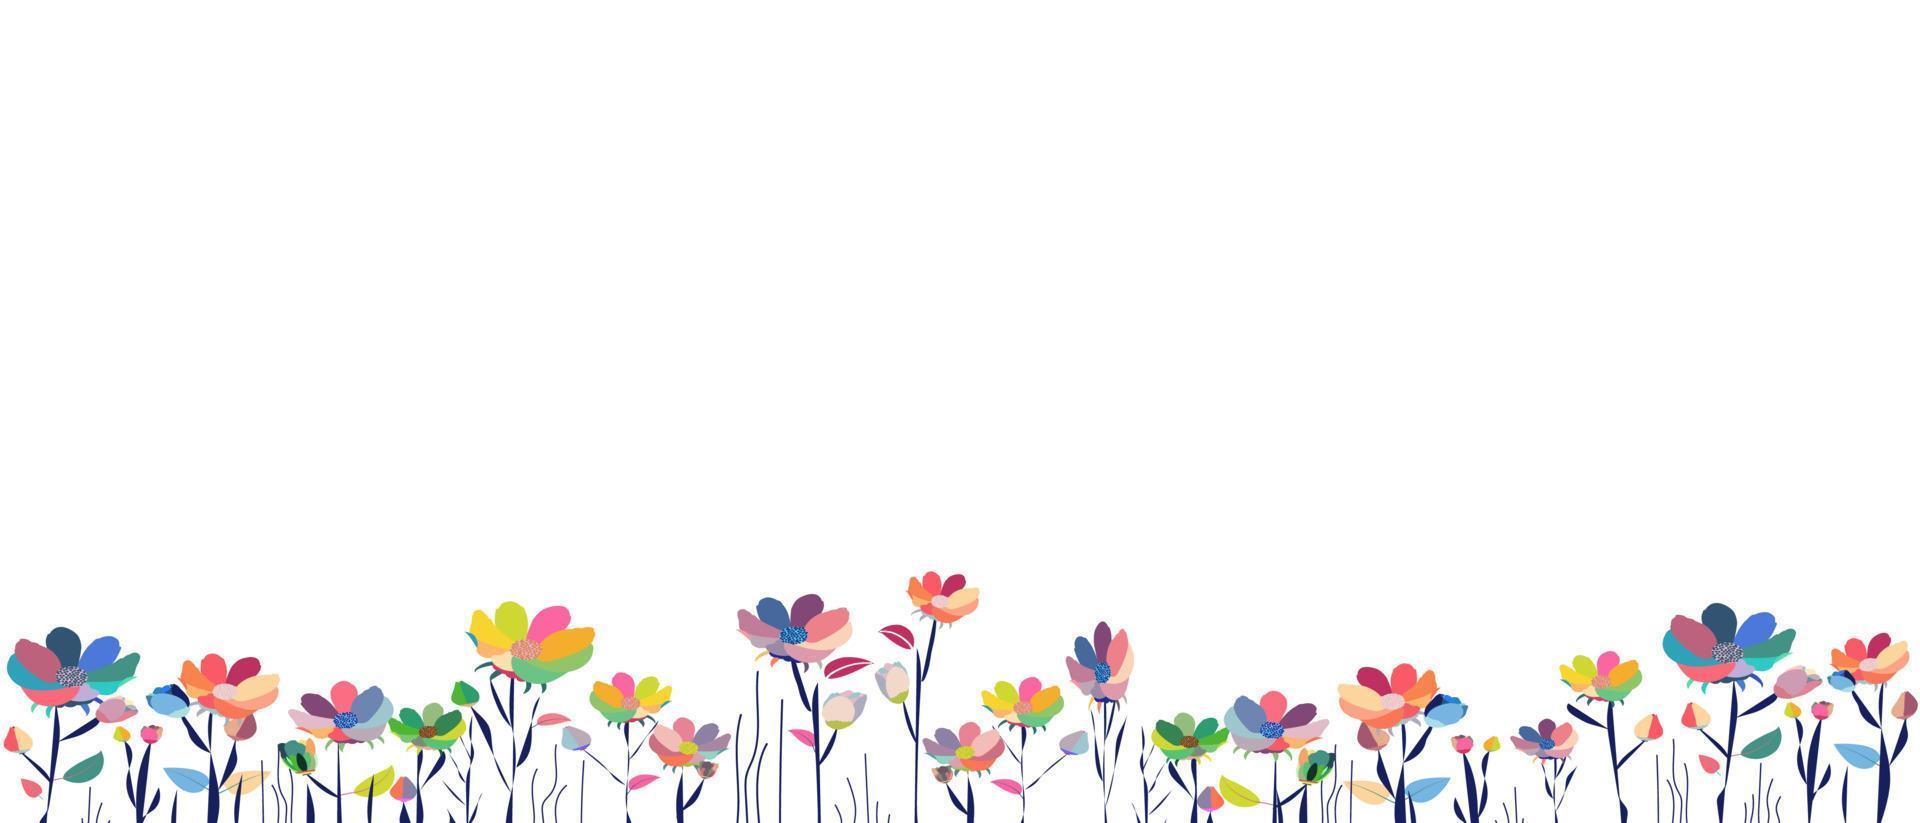 bannière blanche horizontale ou toile de fond florale décorée de magnifiques fleurs multicolores et feuilles bordure botanique printanière à plat sur fond blanc. vecteur